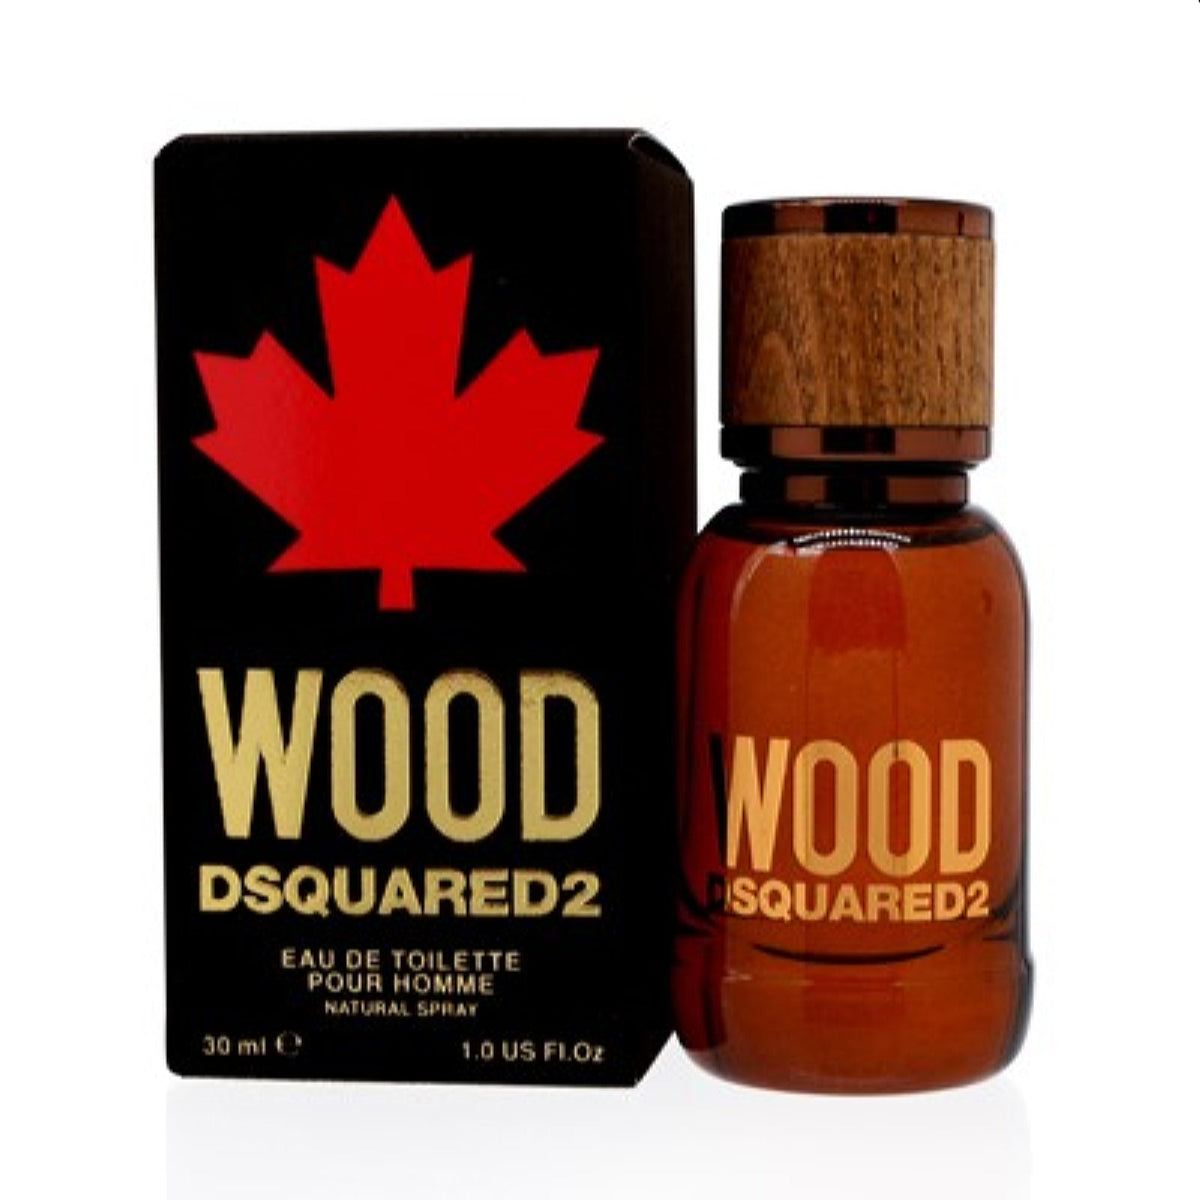 Wood  Dsquared2 Edt Spray 1.0 Oz (30 Ml) For Men 5B07